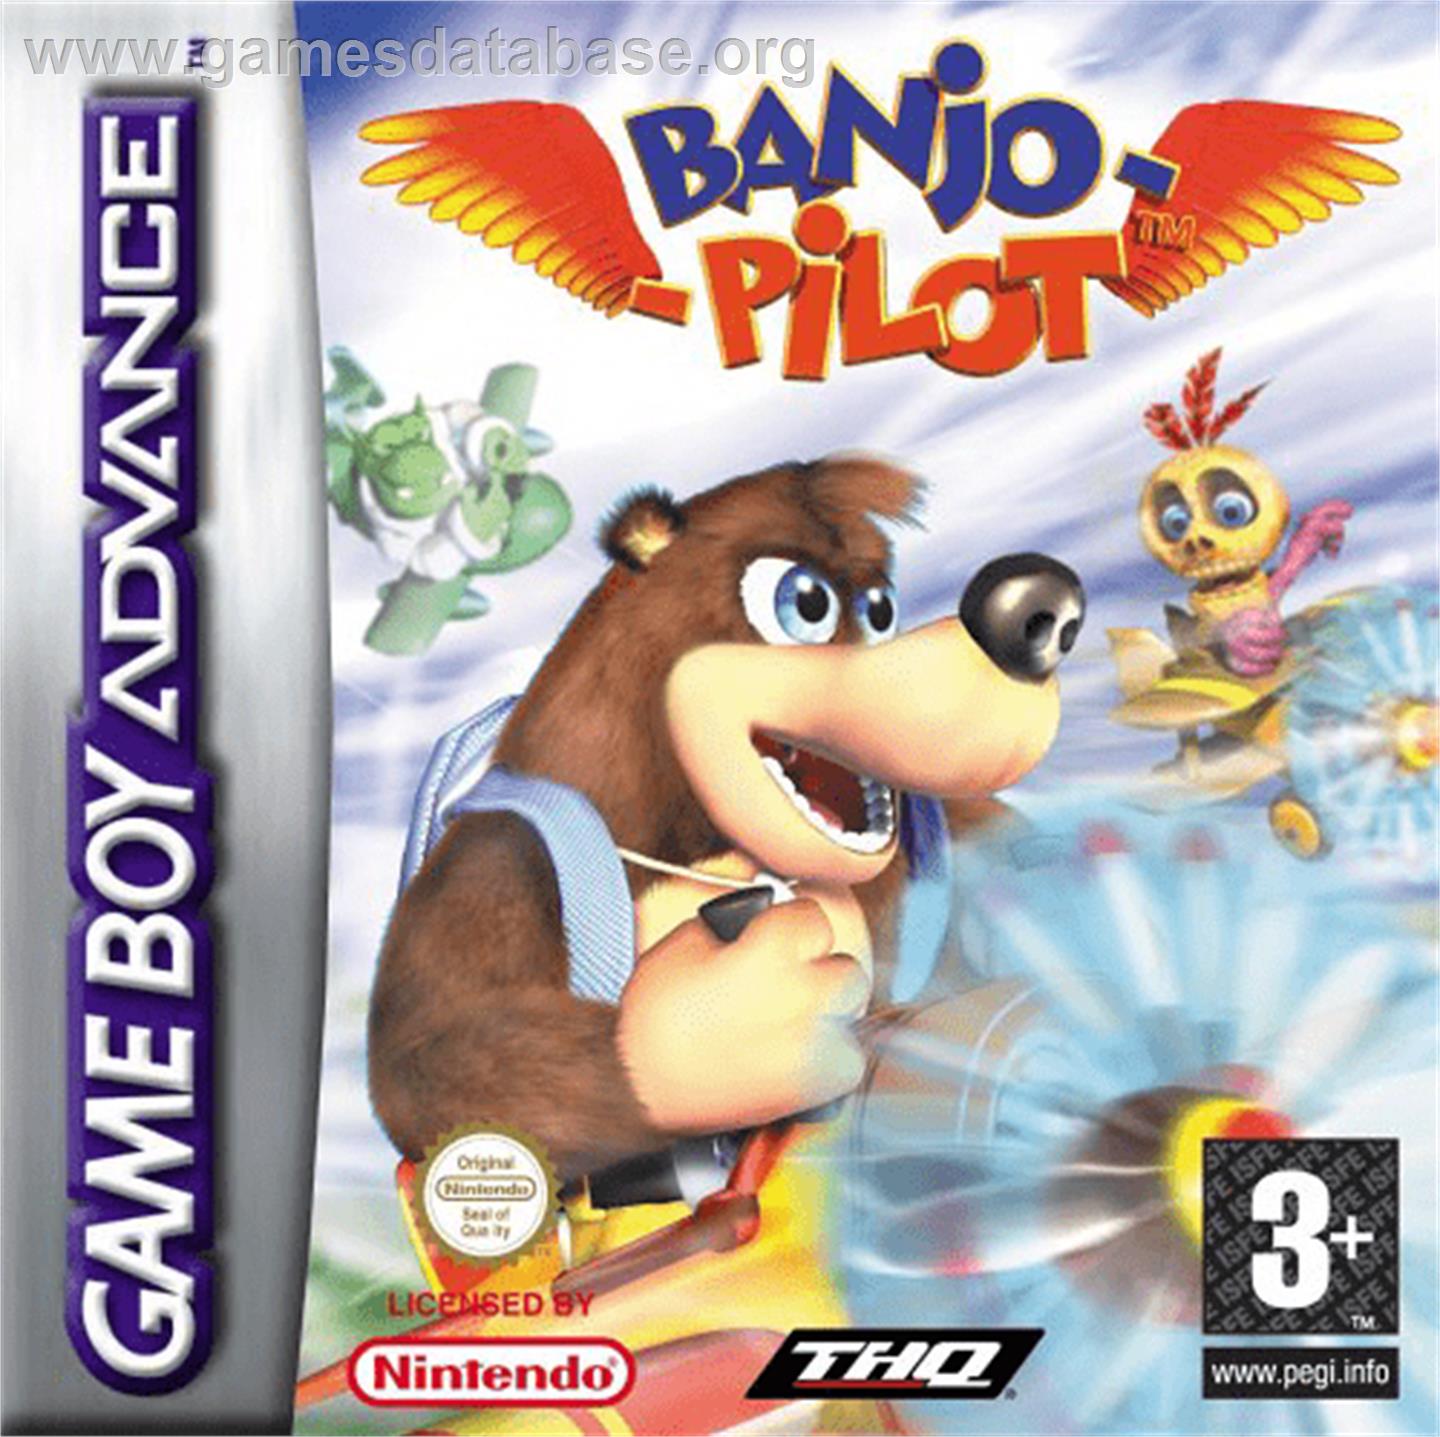 Banjo Pilot - Nintendo Game Boy Advance - Artwork - Box